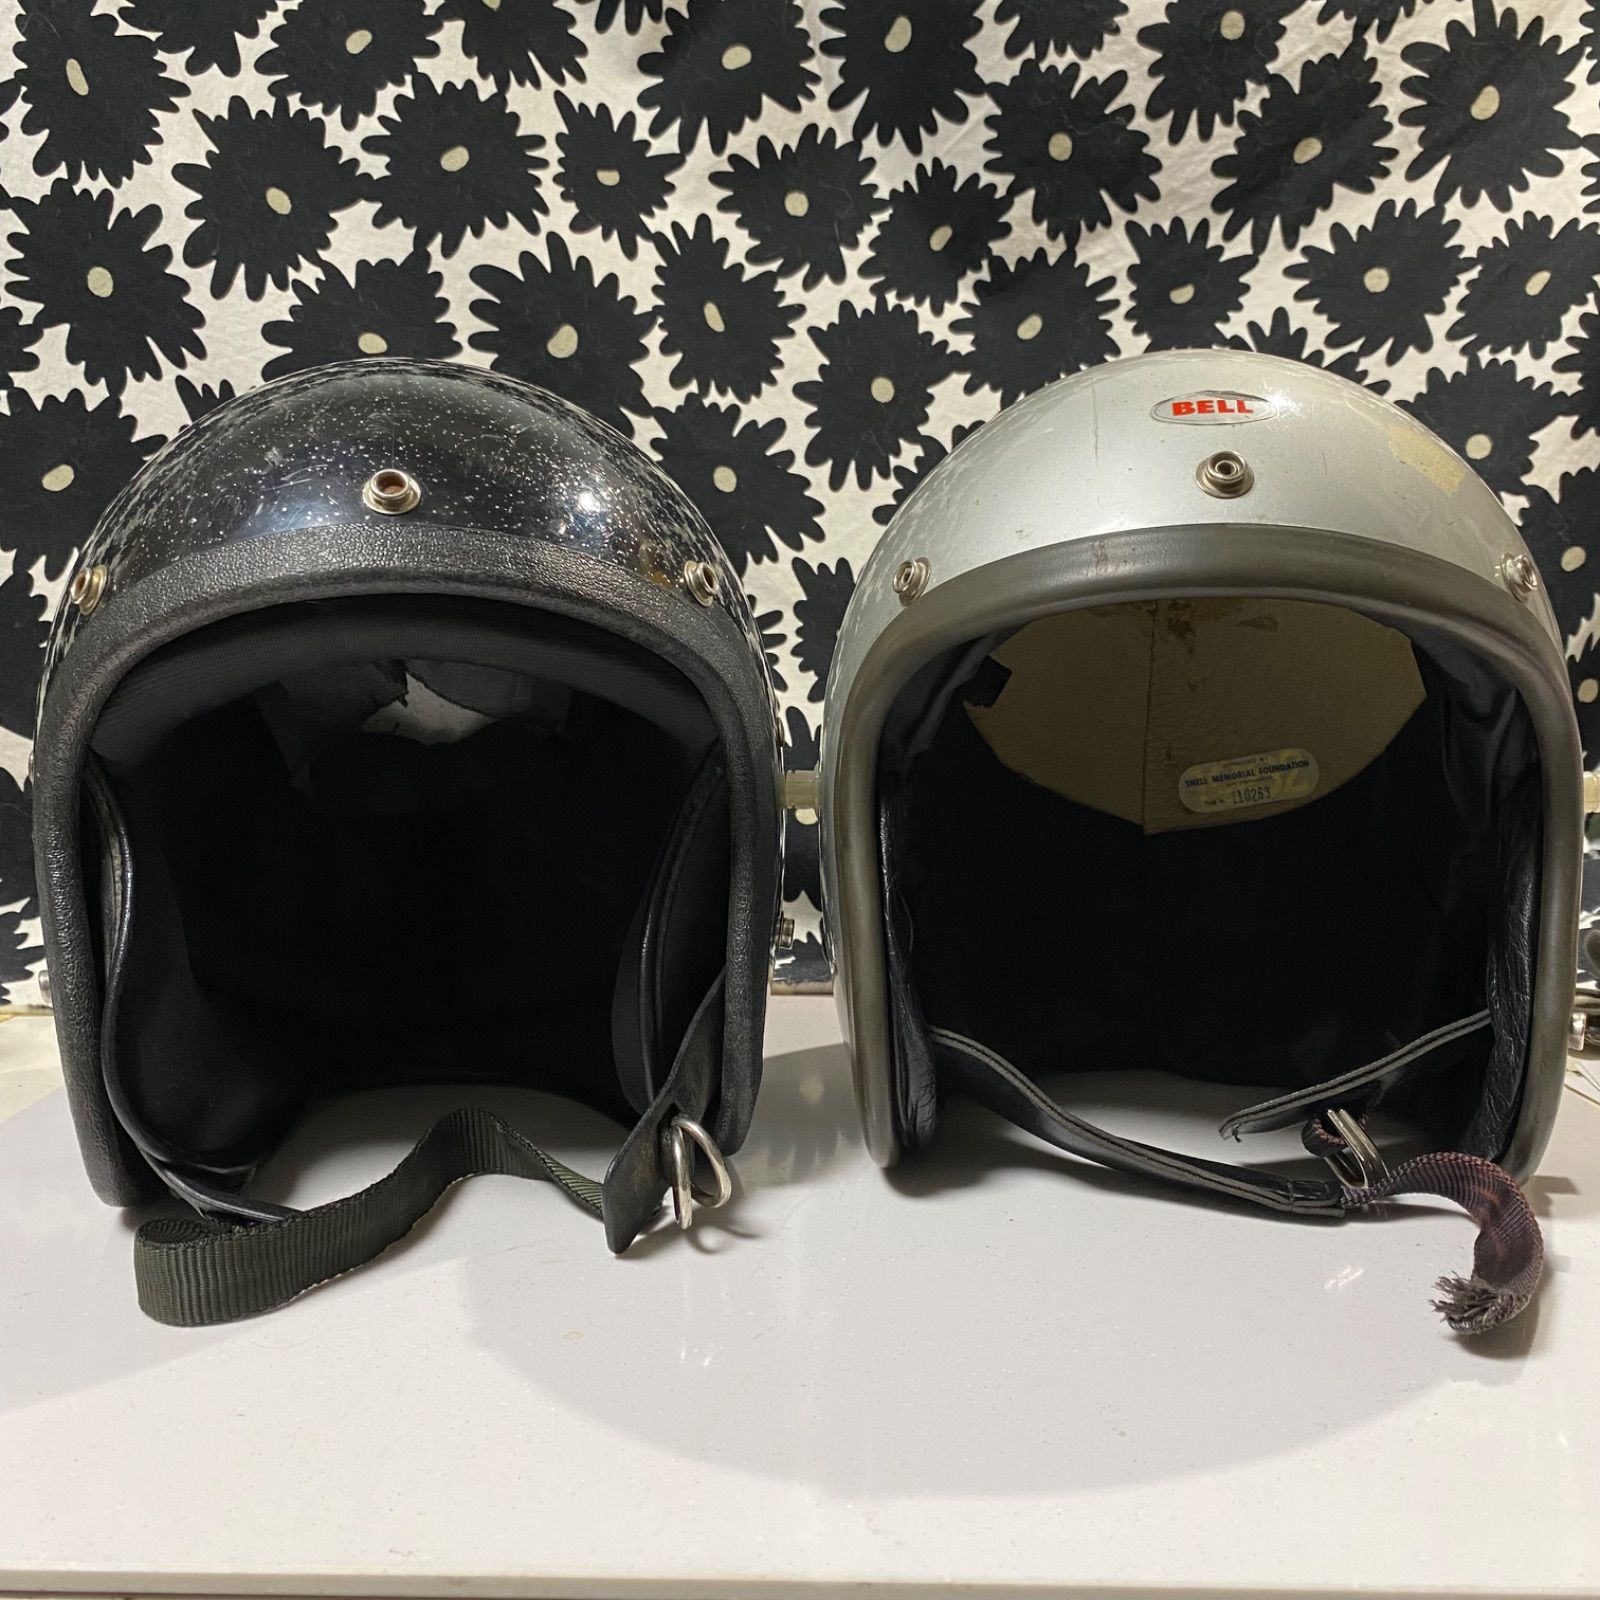 ビンテージヘルメット LSI-4150 ジェットヘルメット - ヘルメット/シールド